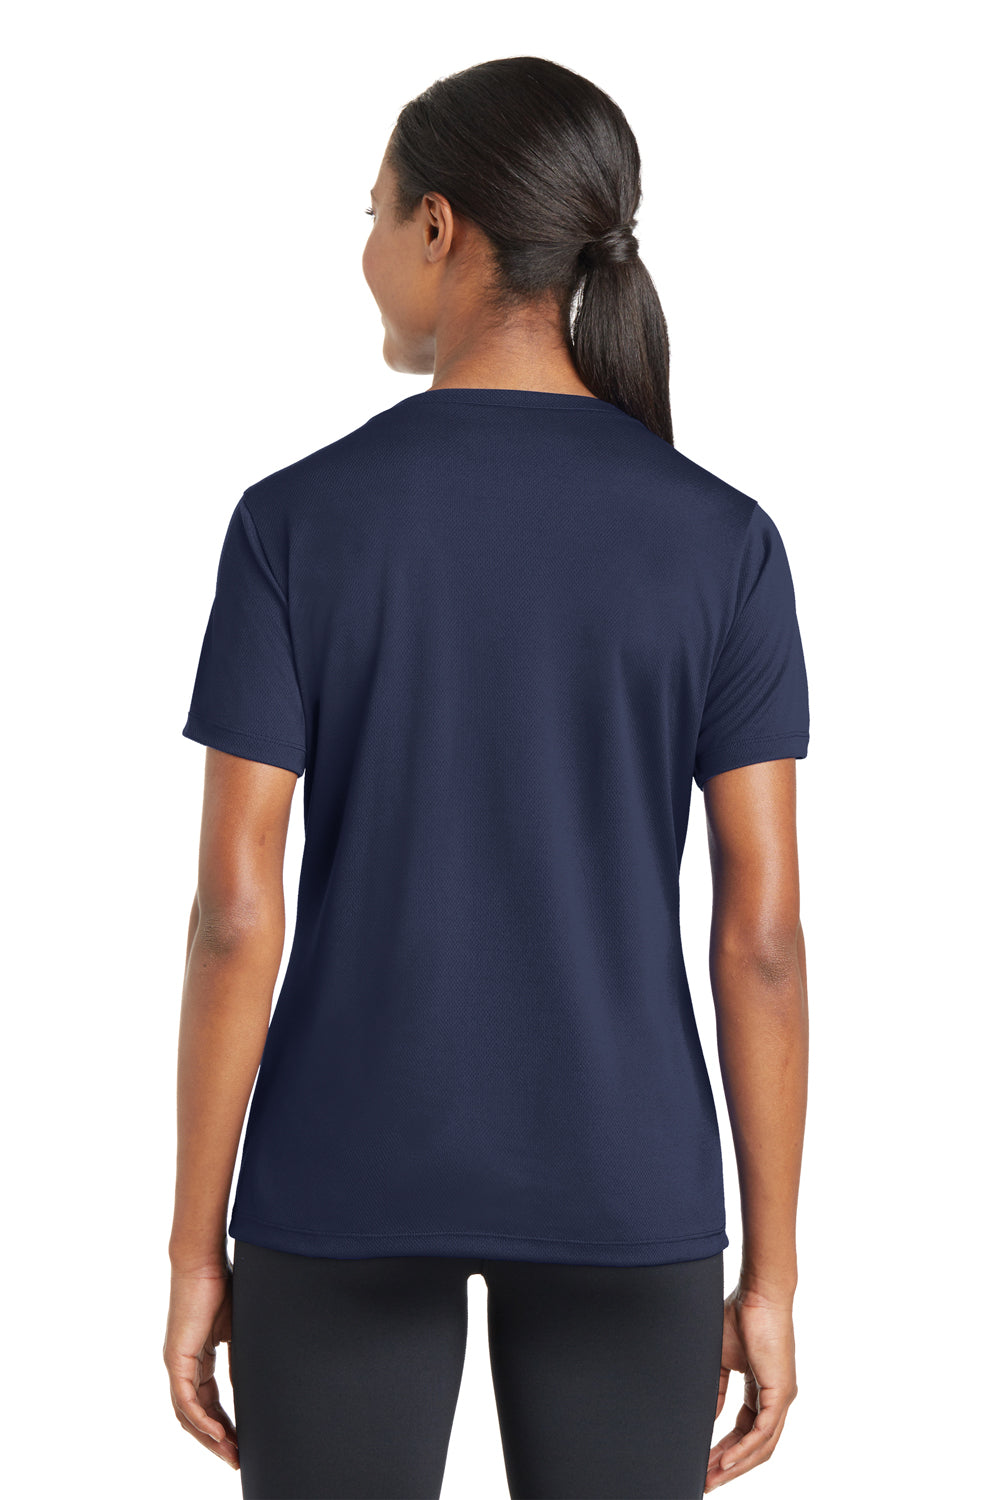 Sport-Tek LST340 Womens RacerMesh Moisture Wicking Short Sleeve V-Neck T-Shirt Navy Blue Back